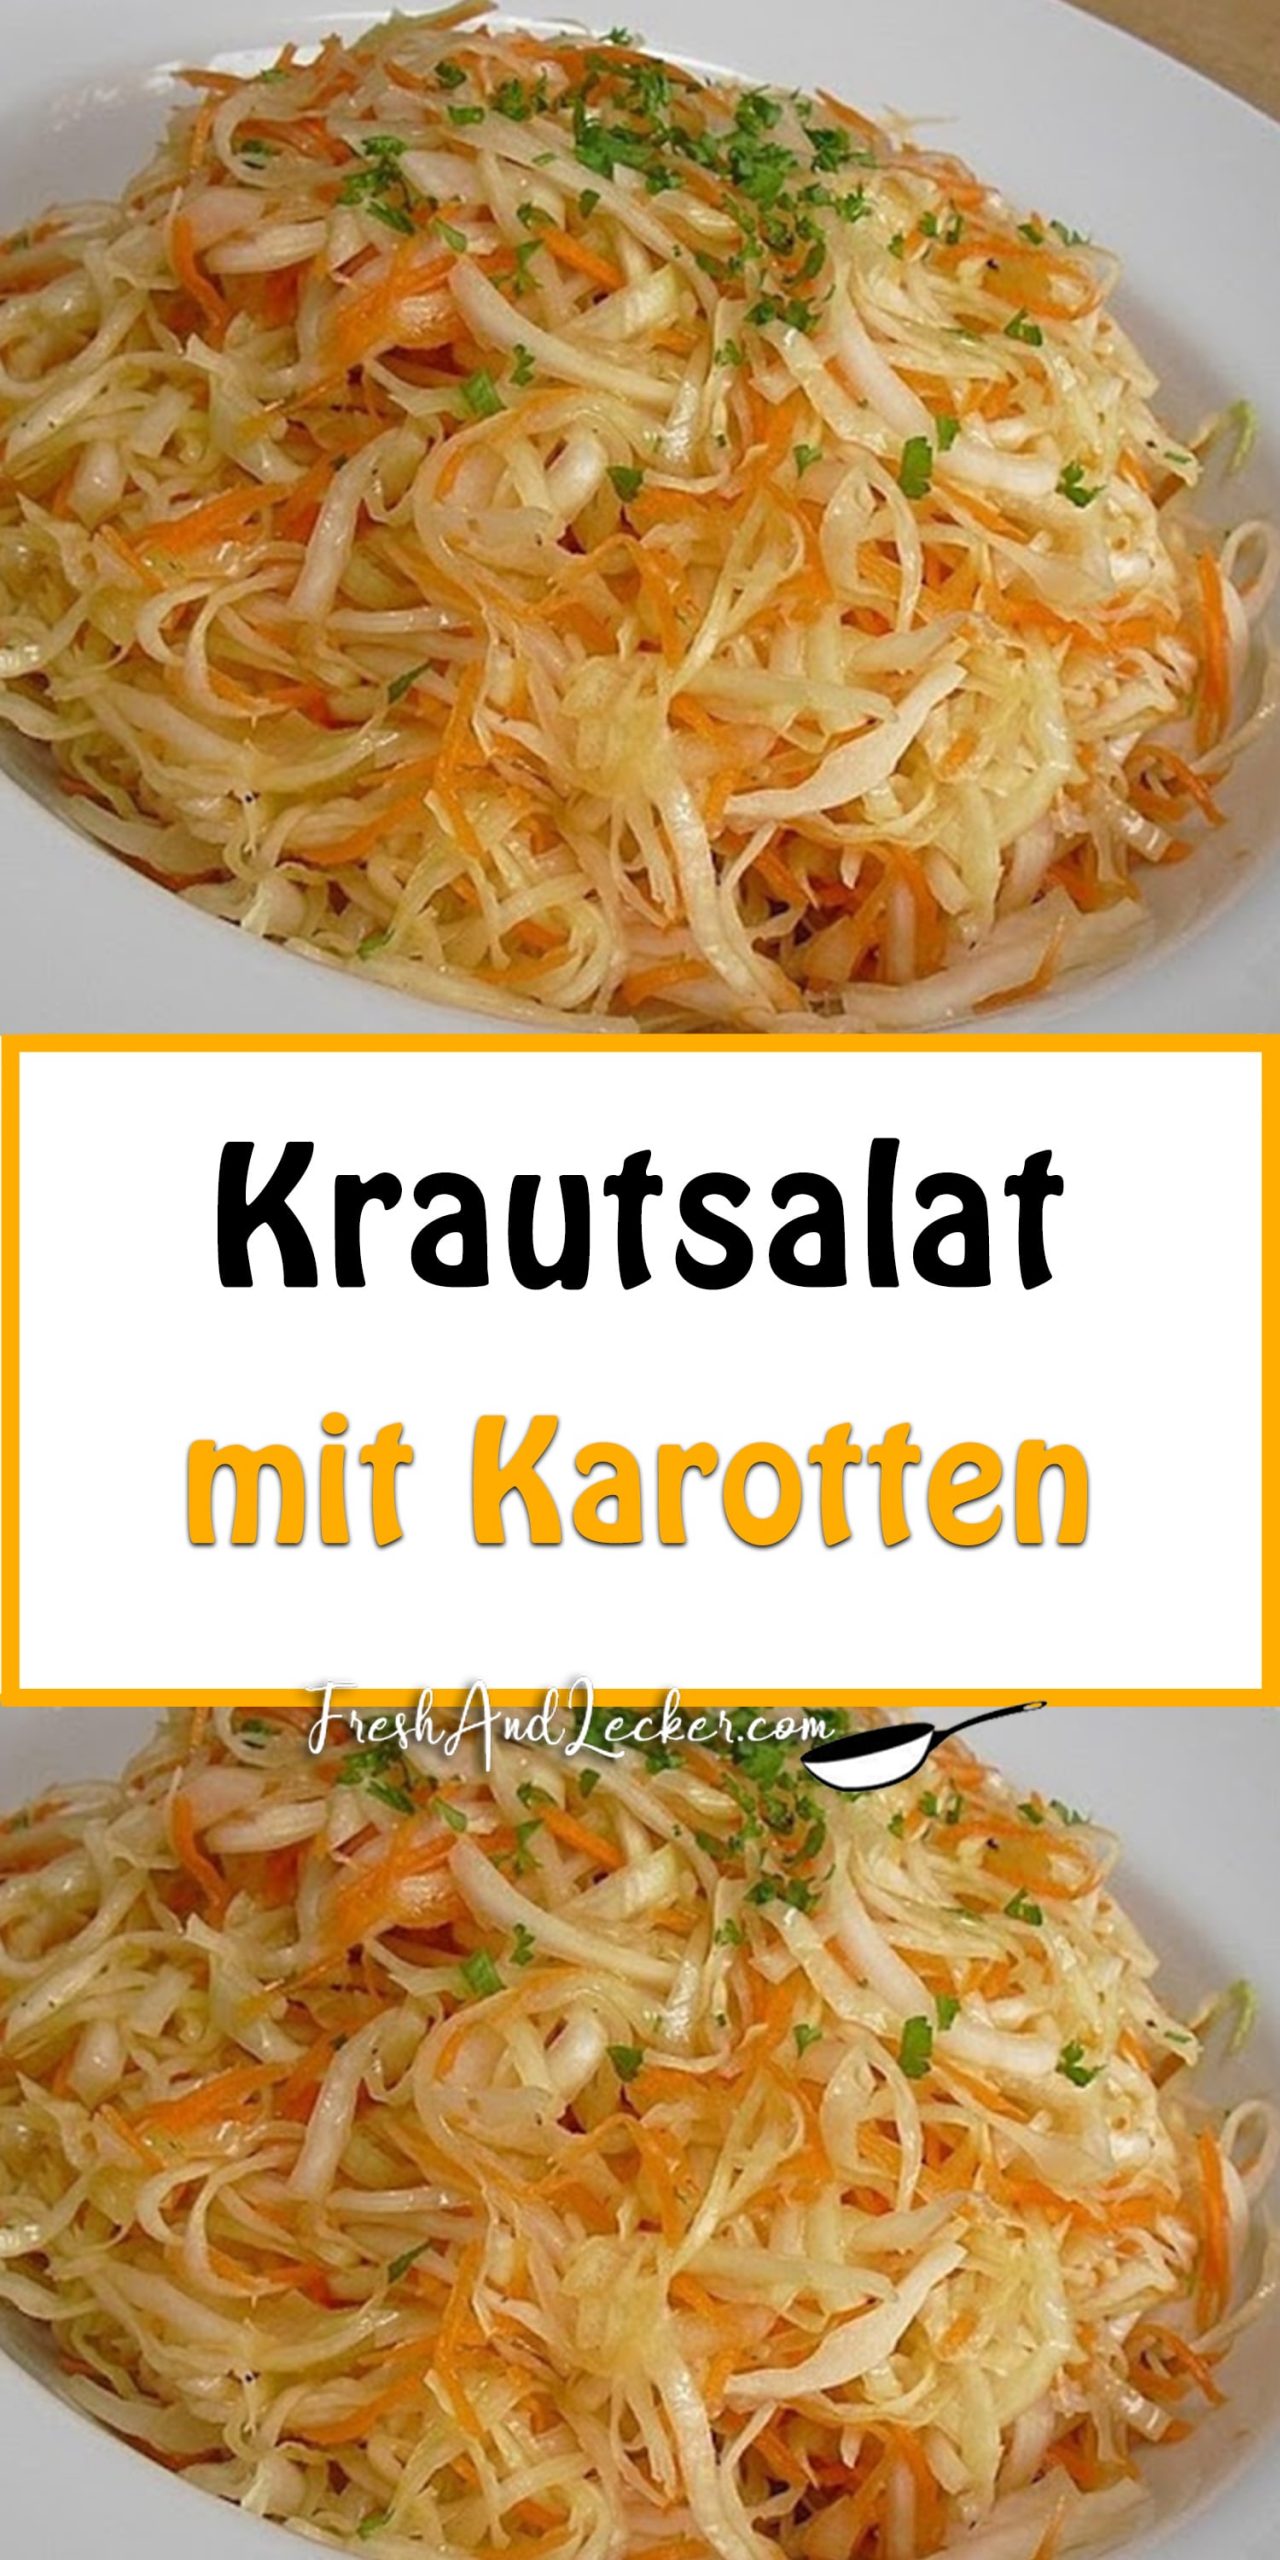 Krautsalat mit Karotten - Fresh Lecker